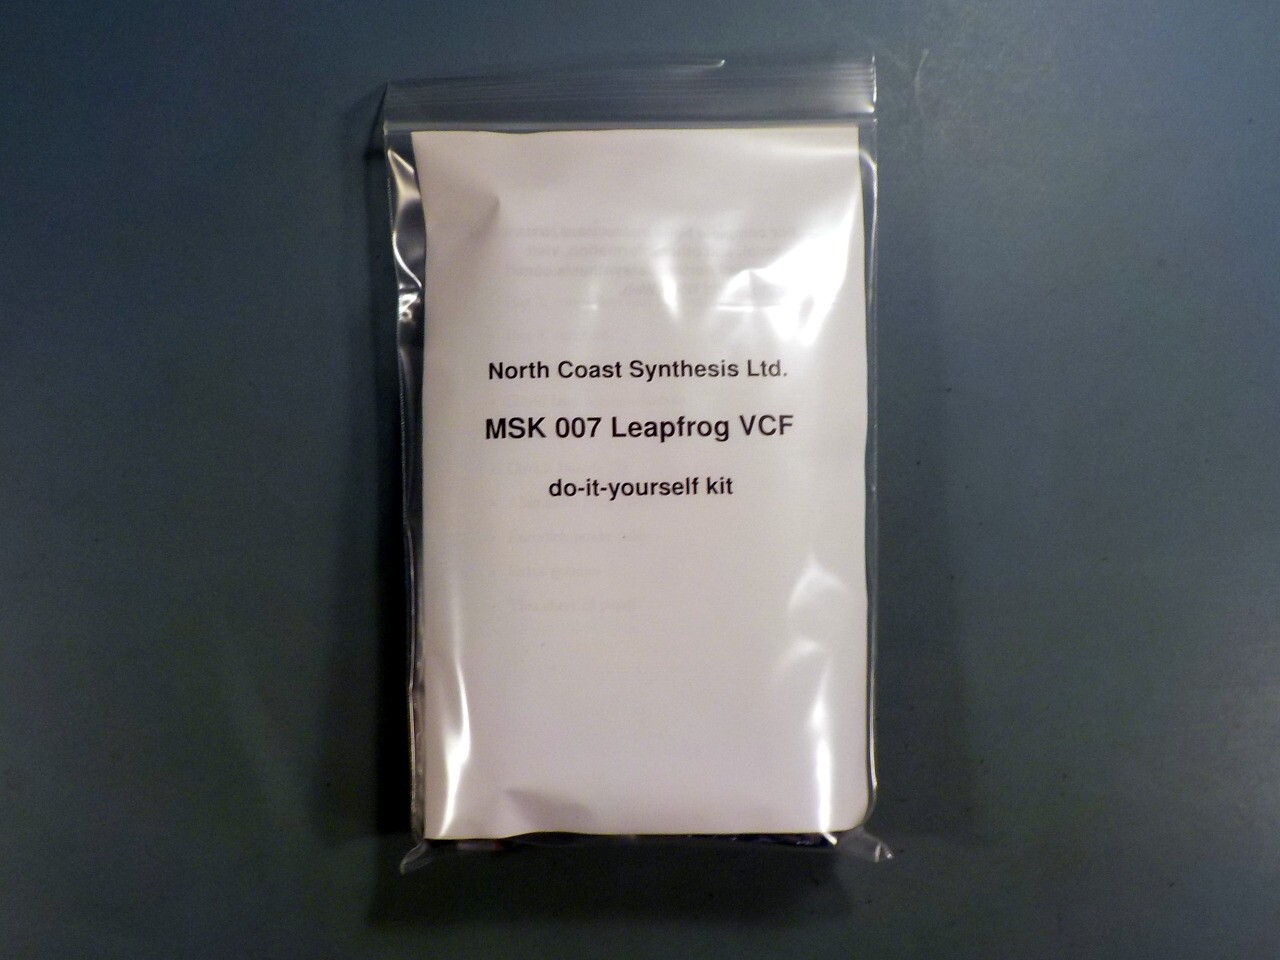 MSK 007 Leapfrog VCF SDIY Kit